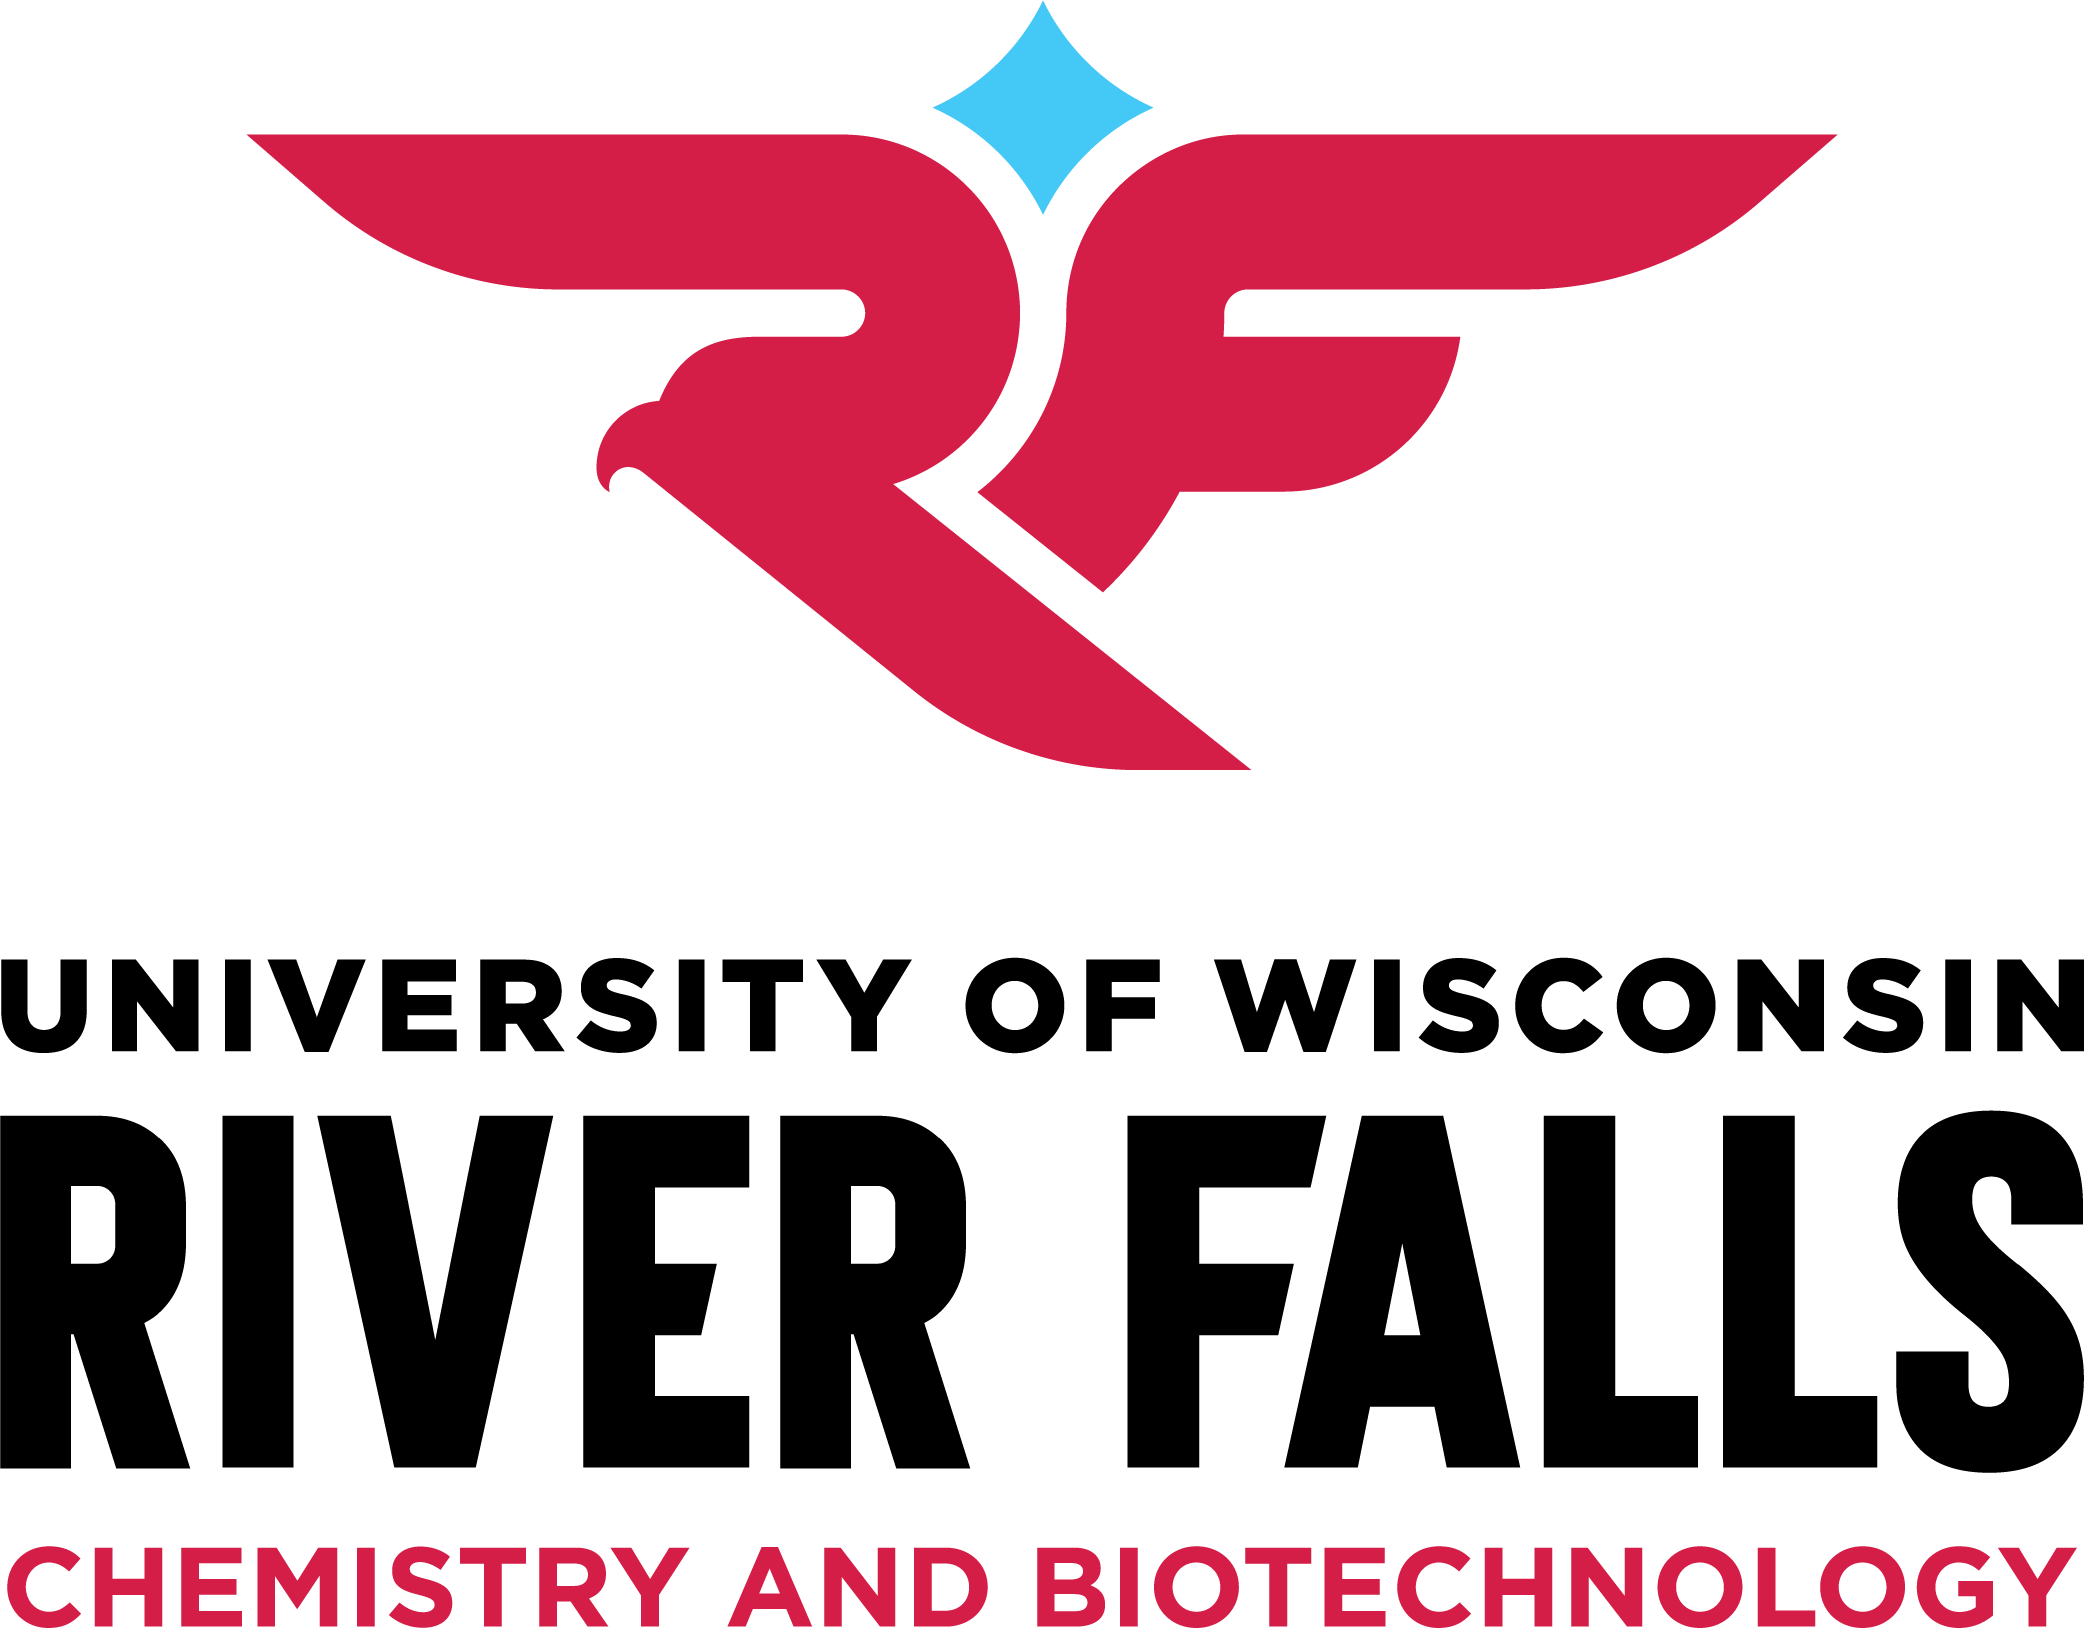 UWRF_Vertical_Chemistry Biotechnology_RGB1